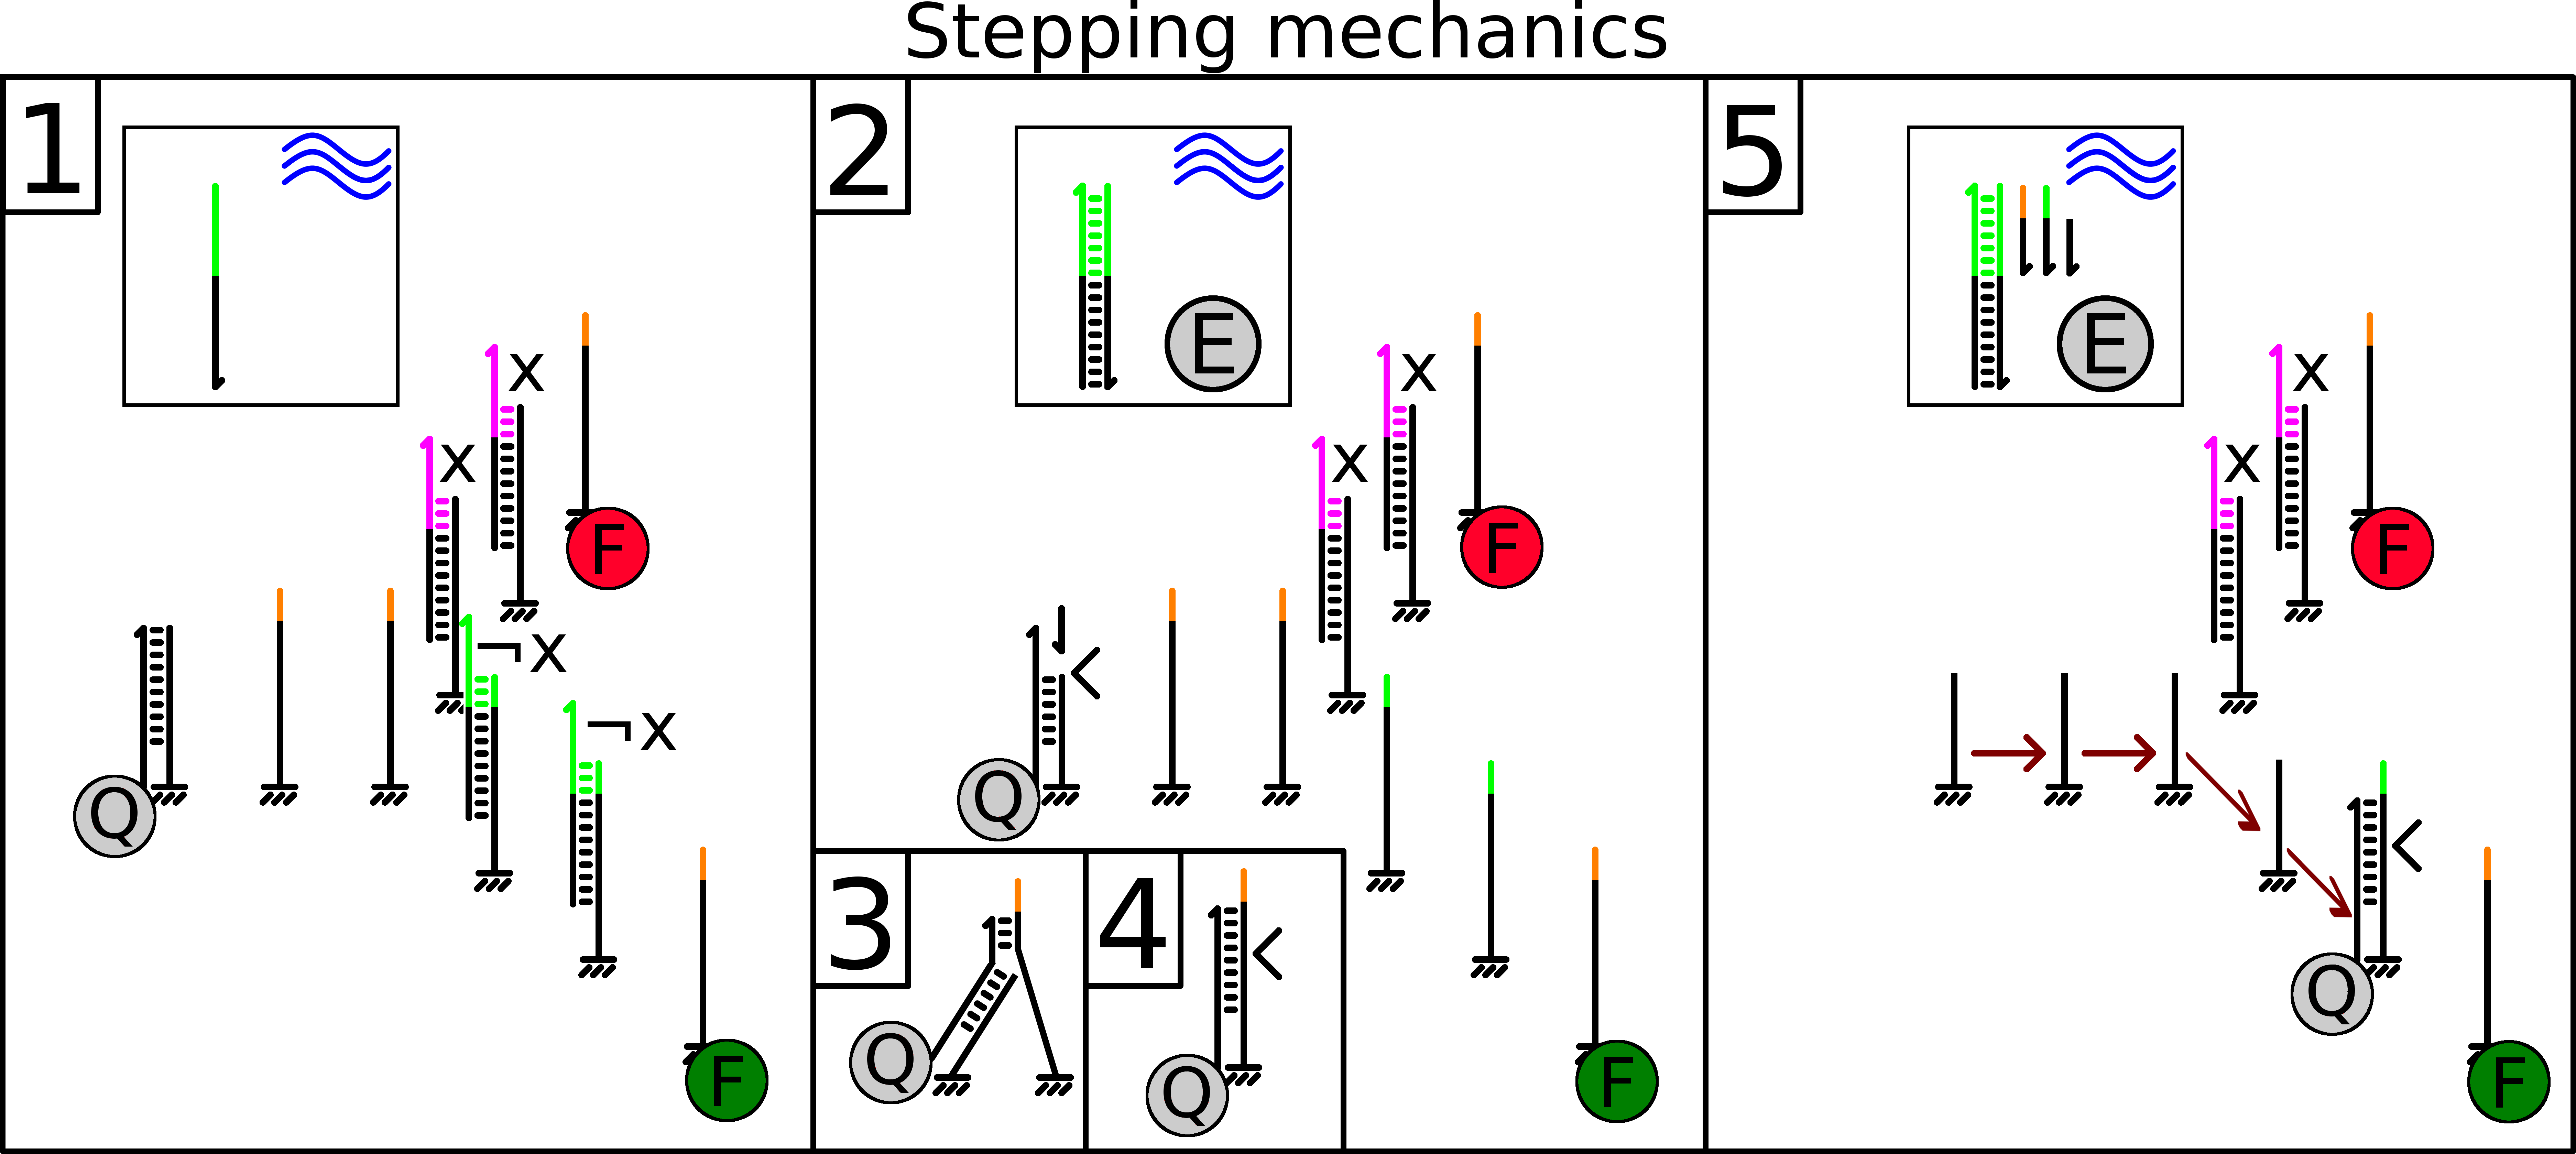 Stepping mechanics